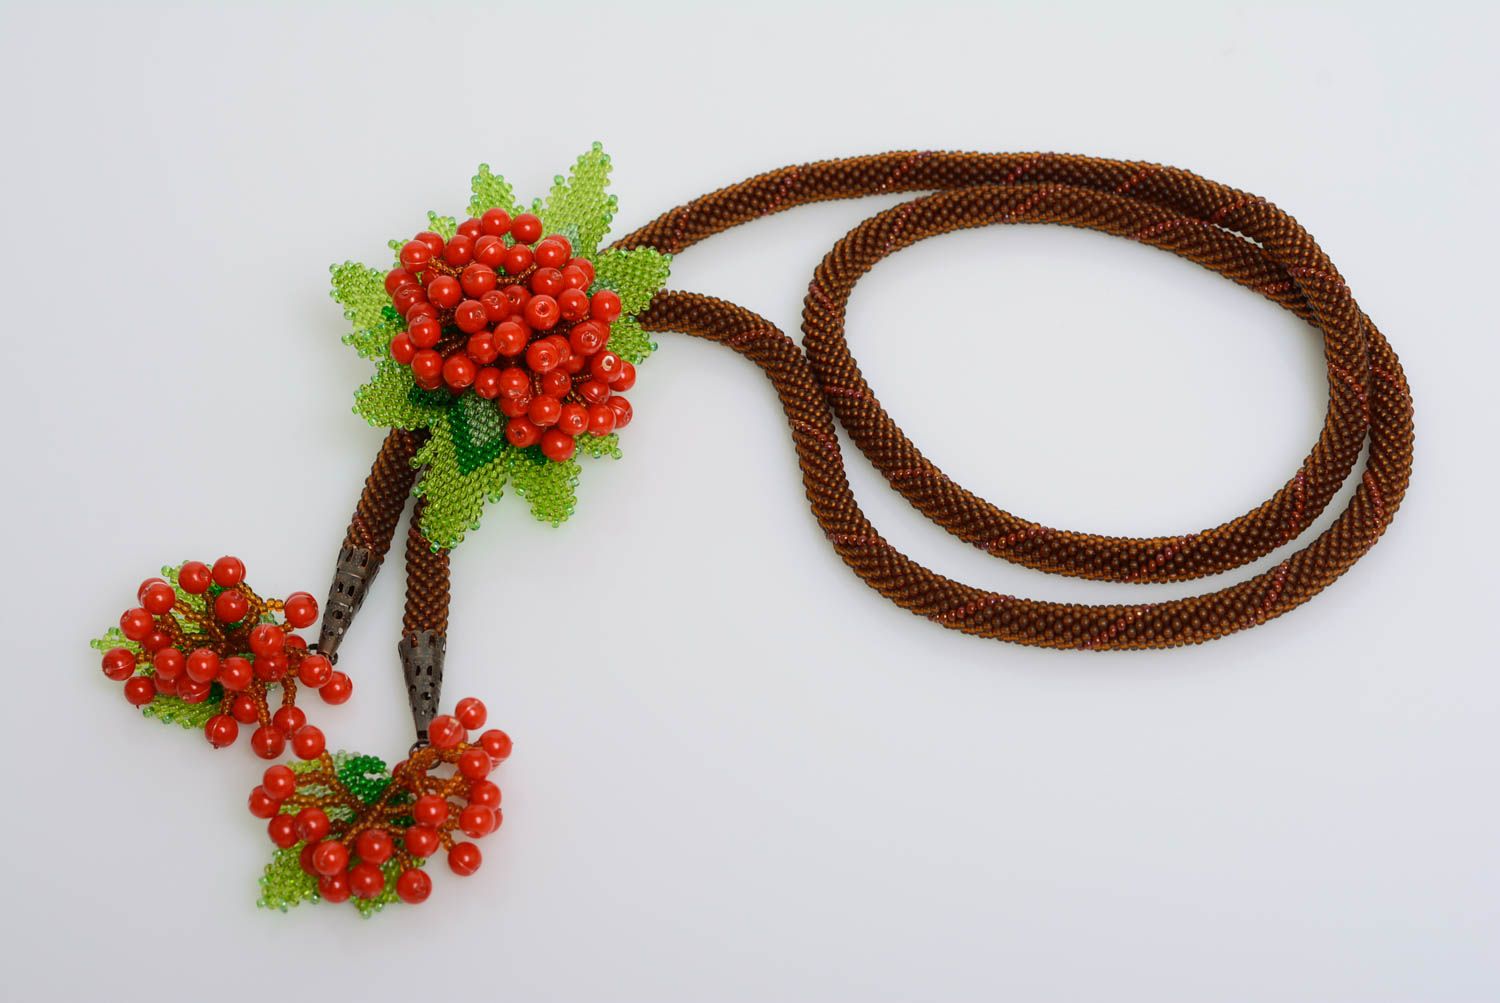 Жгут из бисера коричневый с красными ягодами красивый стильный ручная работа фото 3